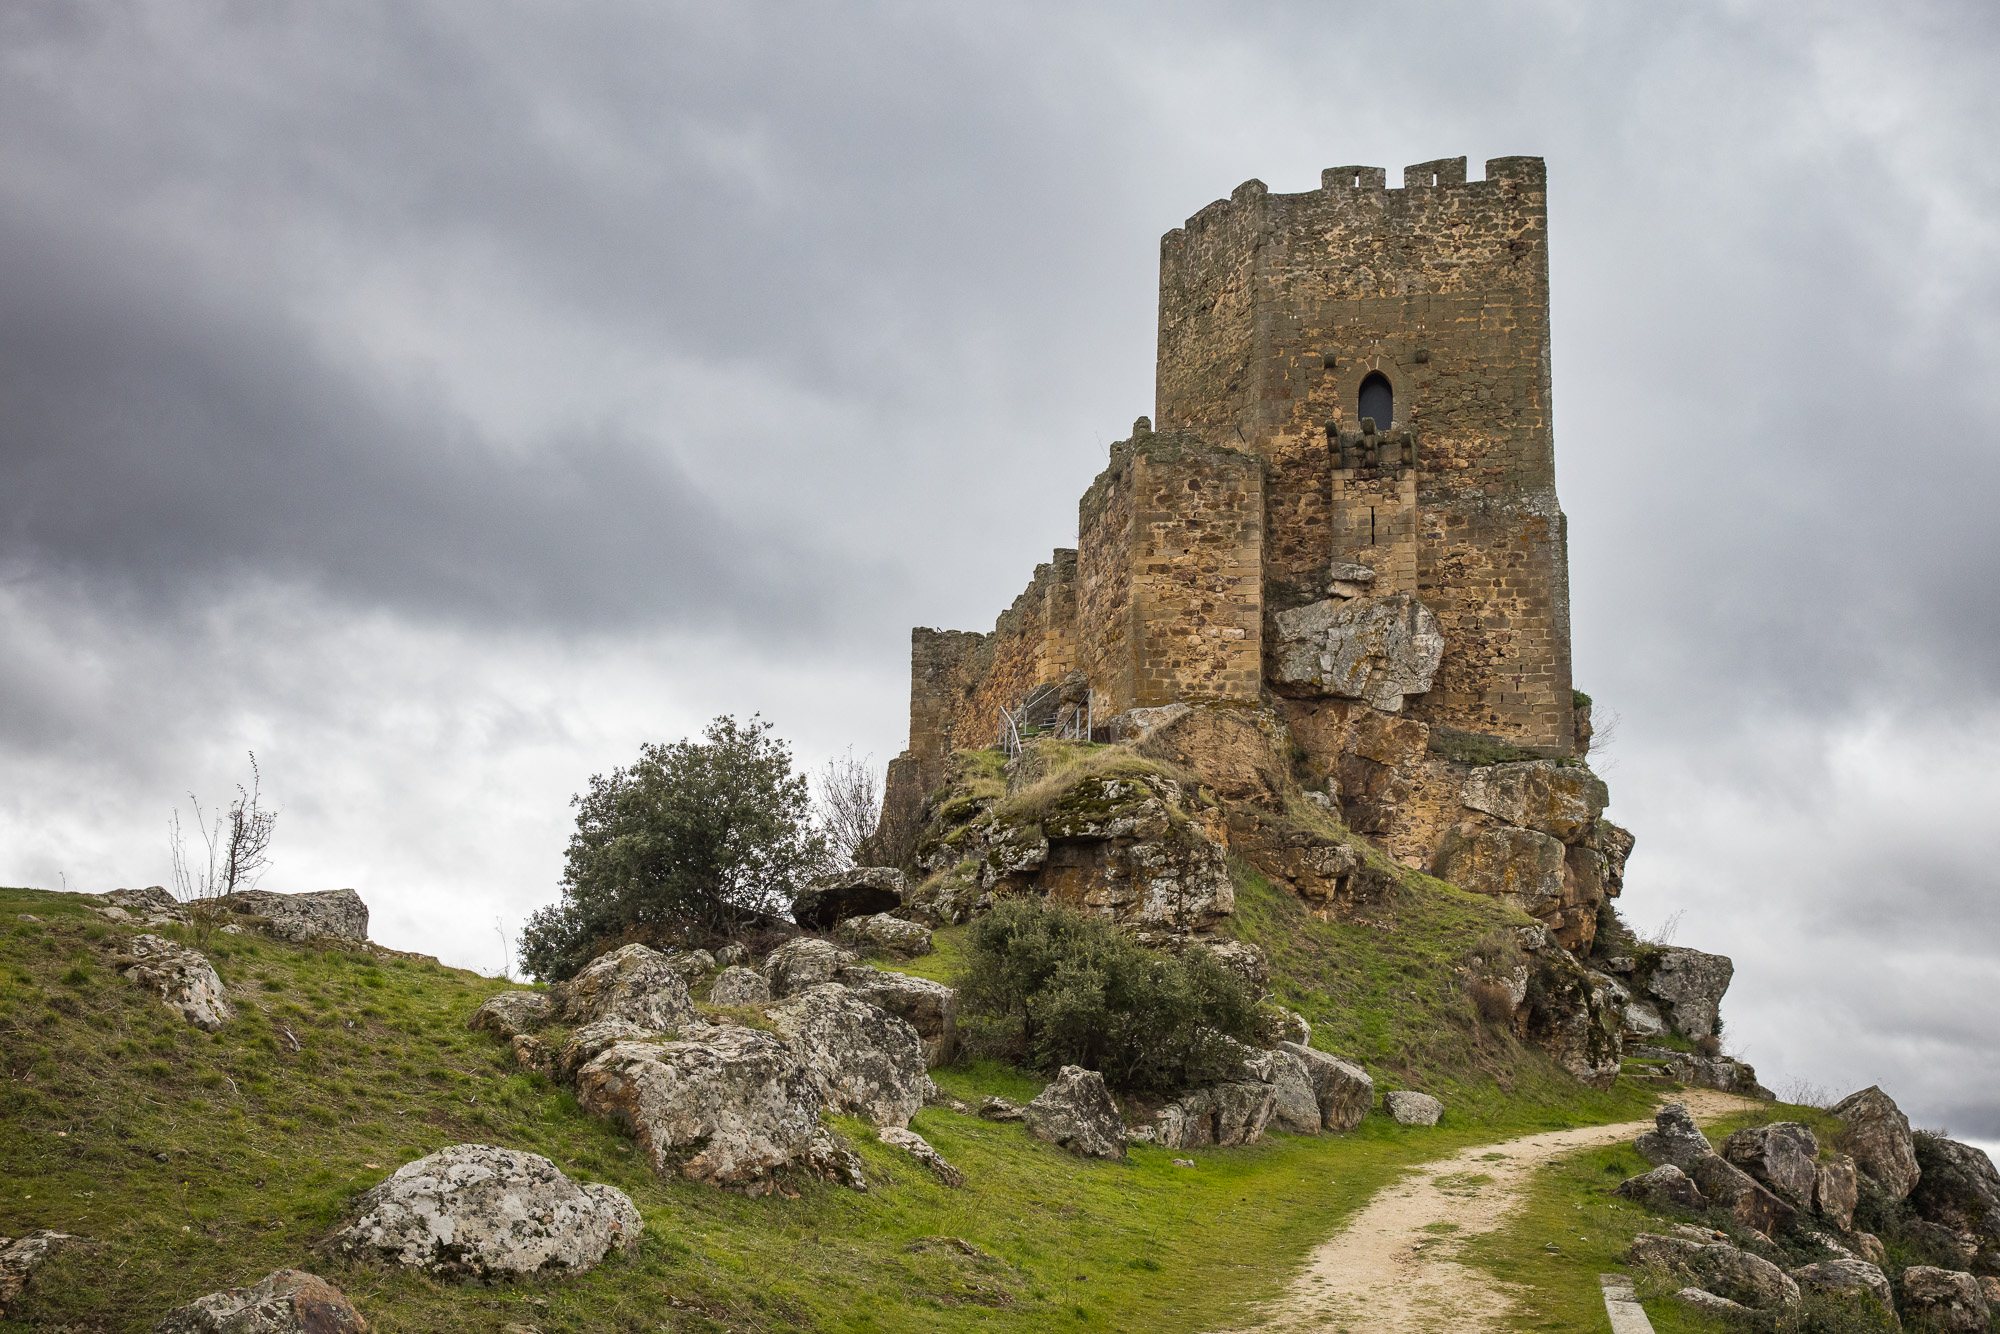 Reportagem sobre lendas populares portuguesas em Algoso, Vimioso, Bragança. Castelo de Algoso. HENRIQUE CASINHAS/OBSERVADOR